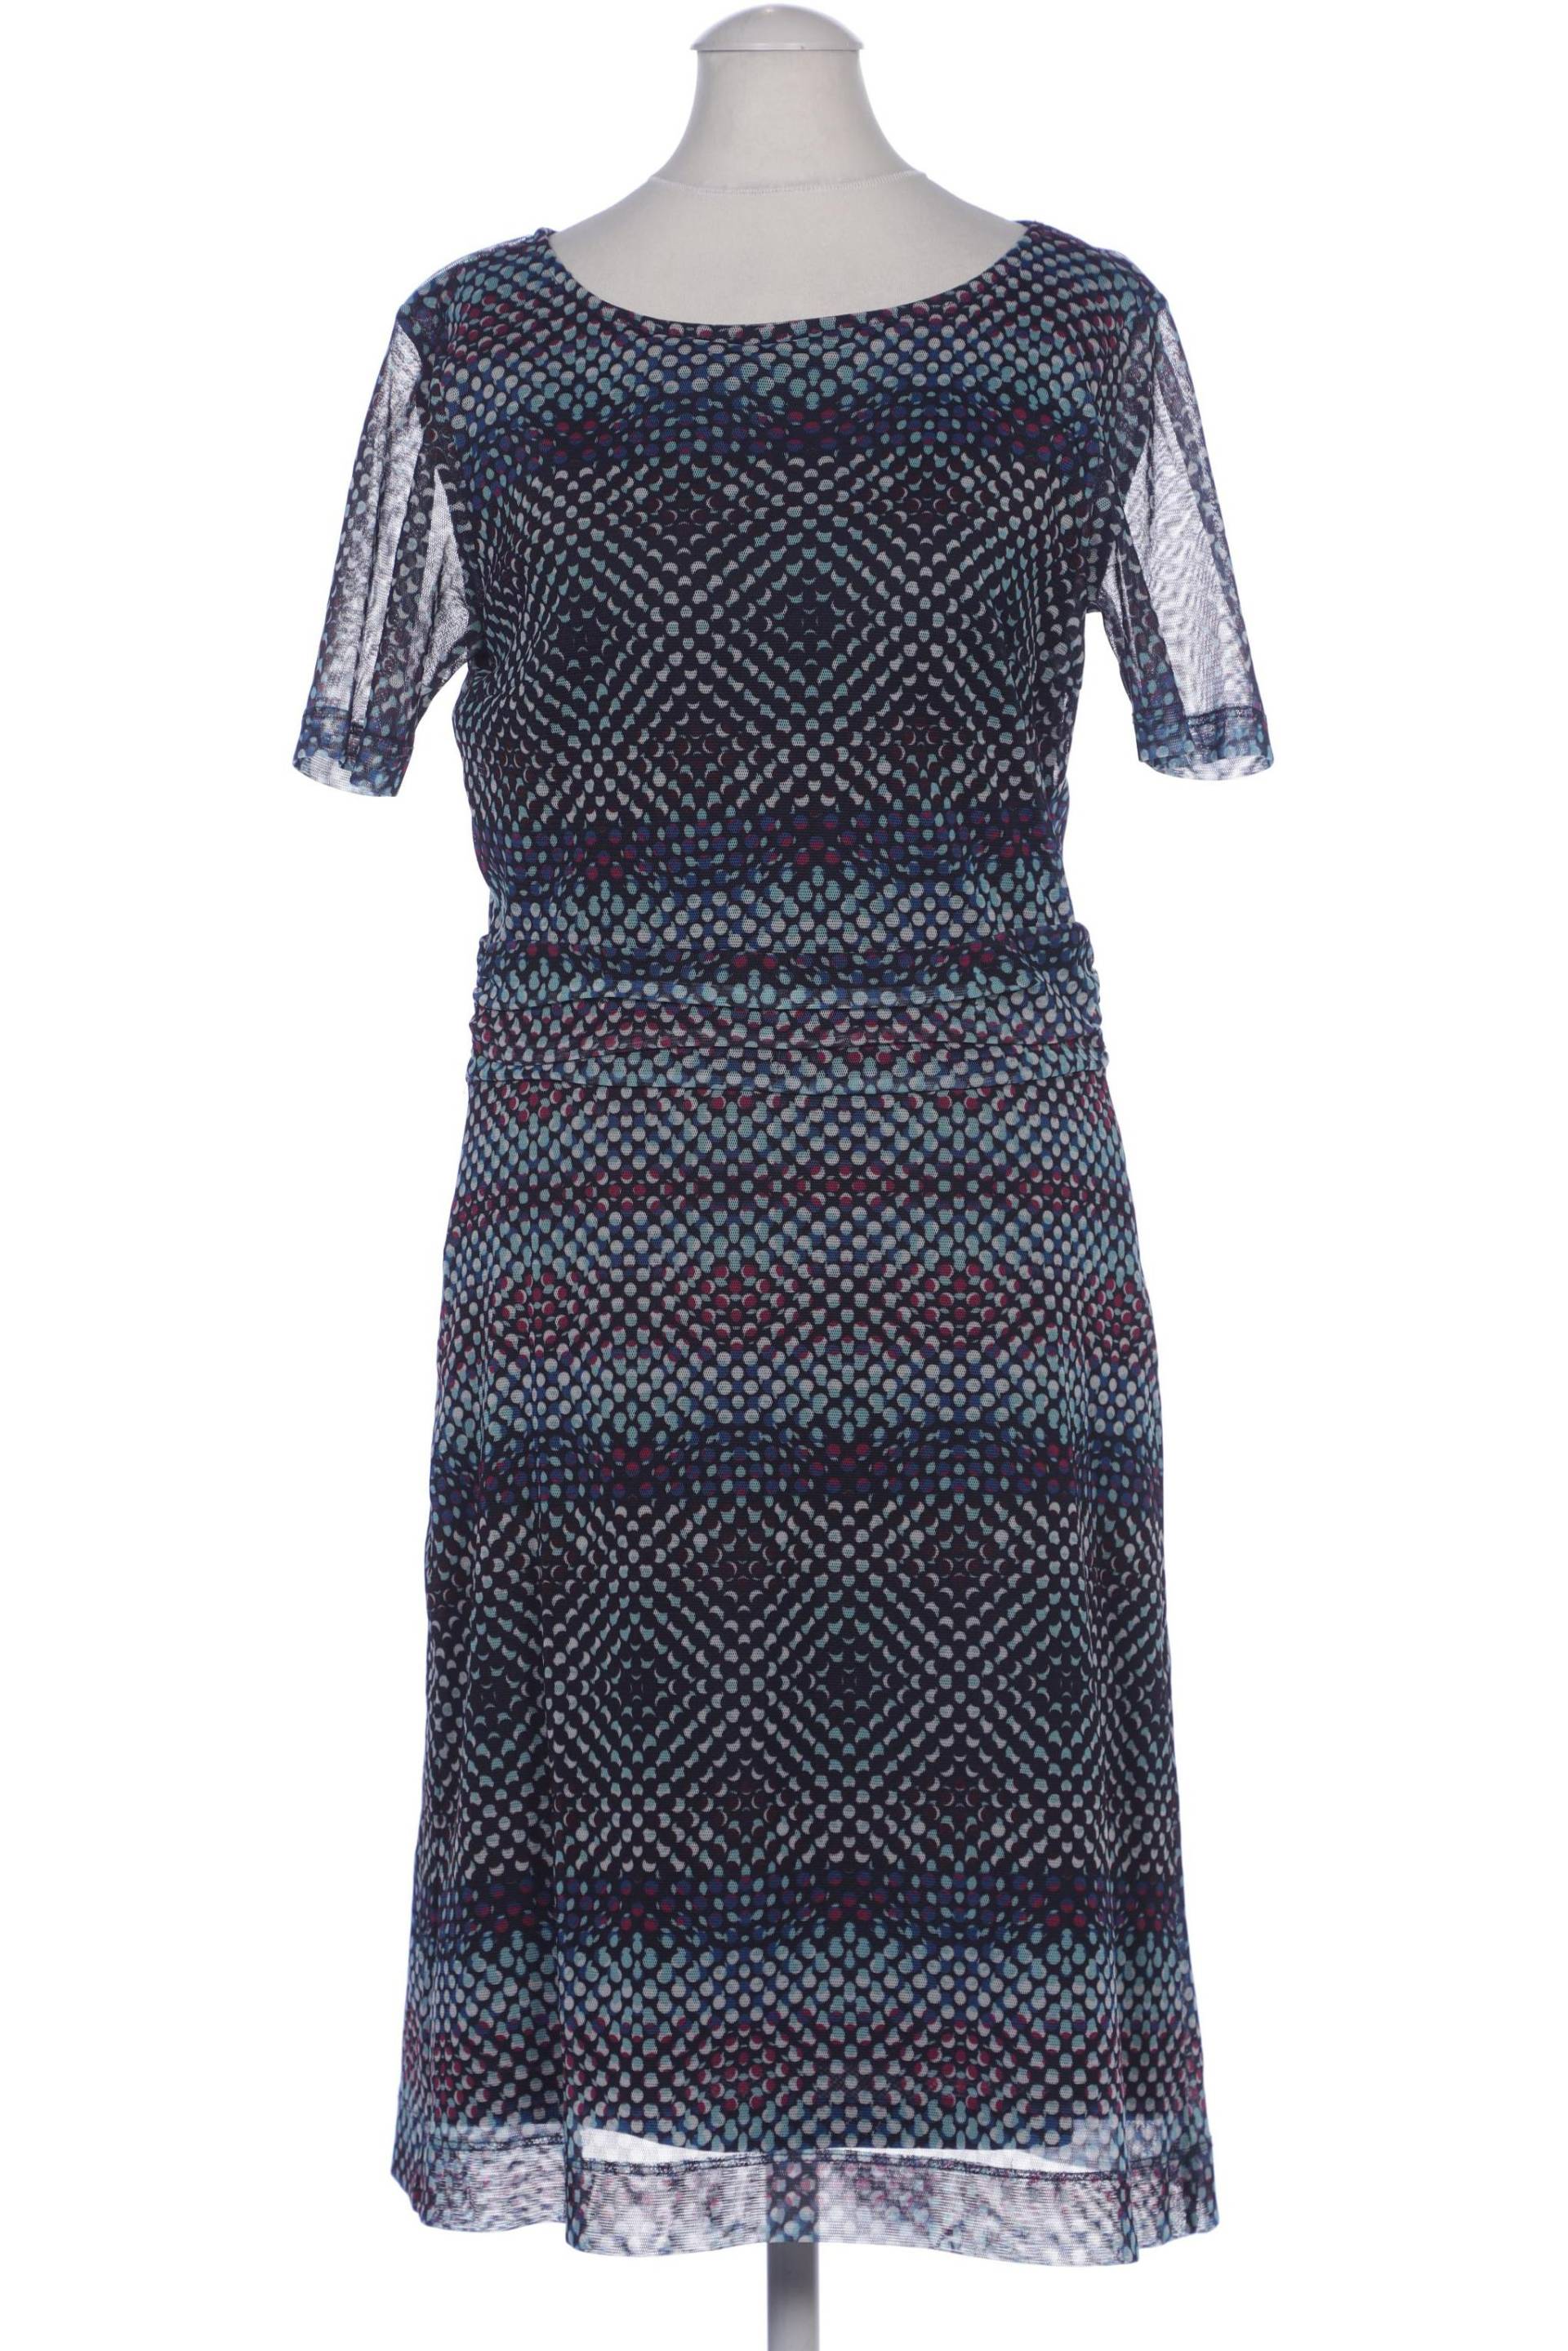 More & More Damen Kleid, marineblau von MORE & MORE